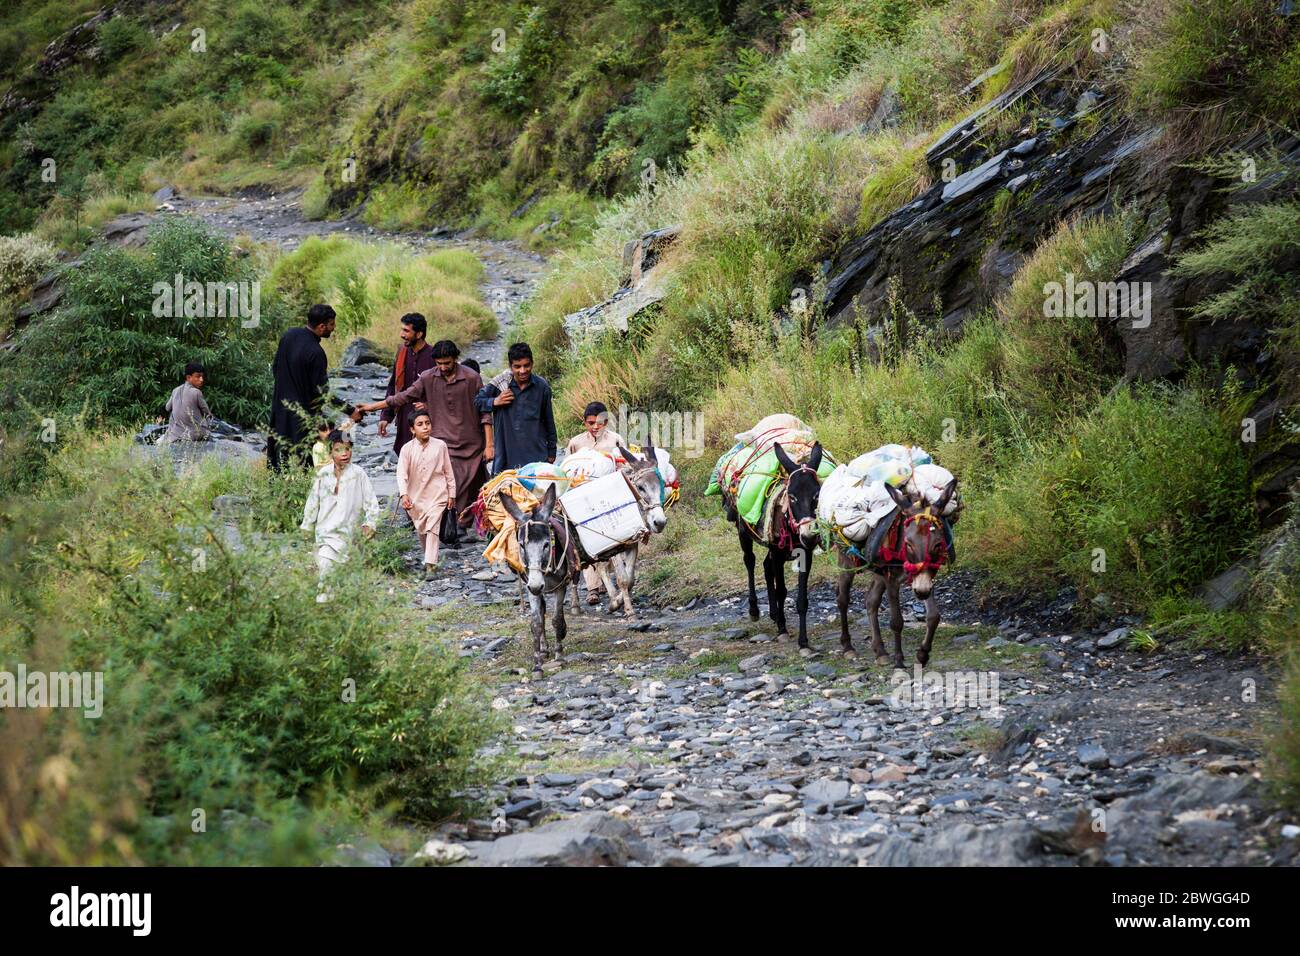 Asini e gente del posto, trekking montagna Elum, Marghuzar, Swat, Provincia di Khyber Pakhtunkhwa, Pakistan, Asia del Sud, Asia Foto Stock